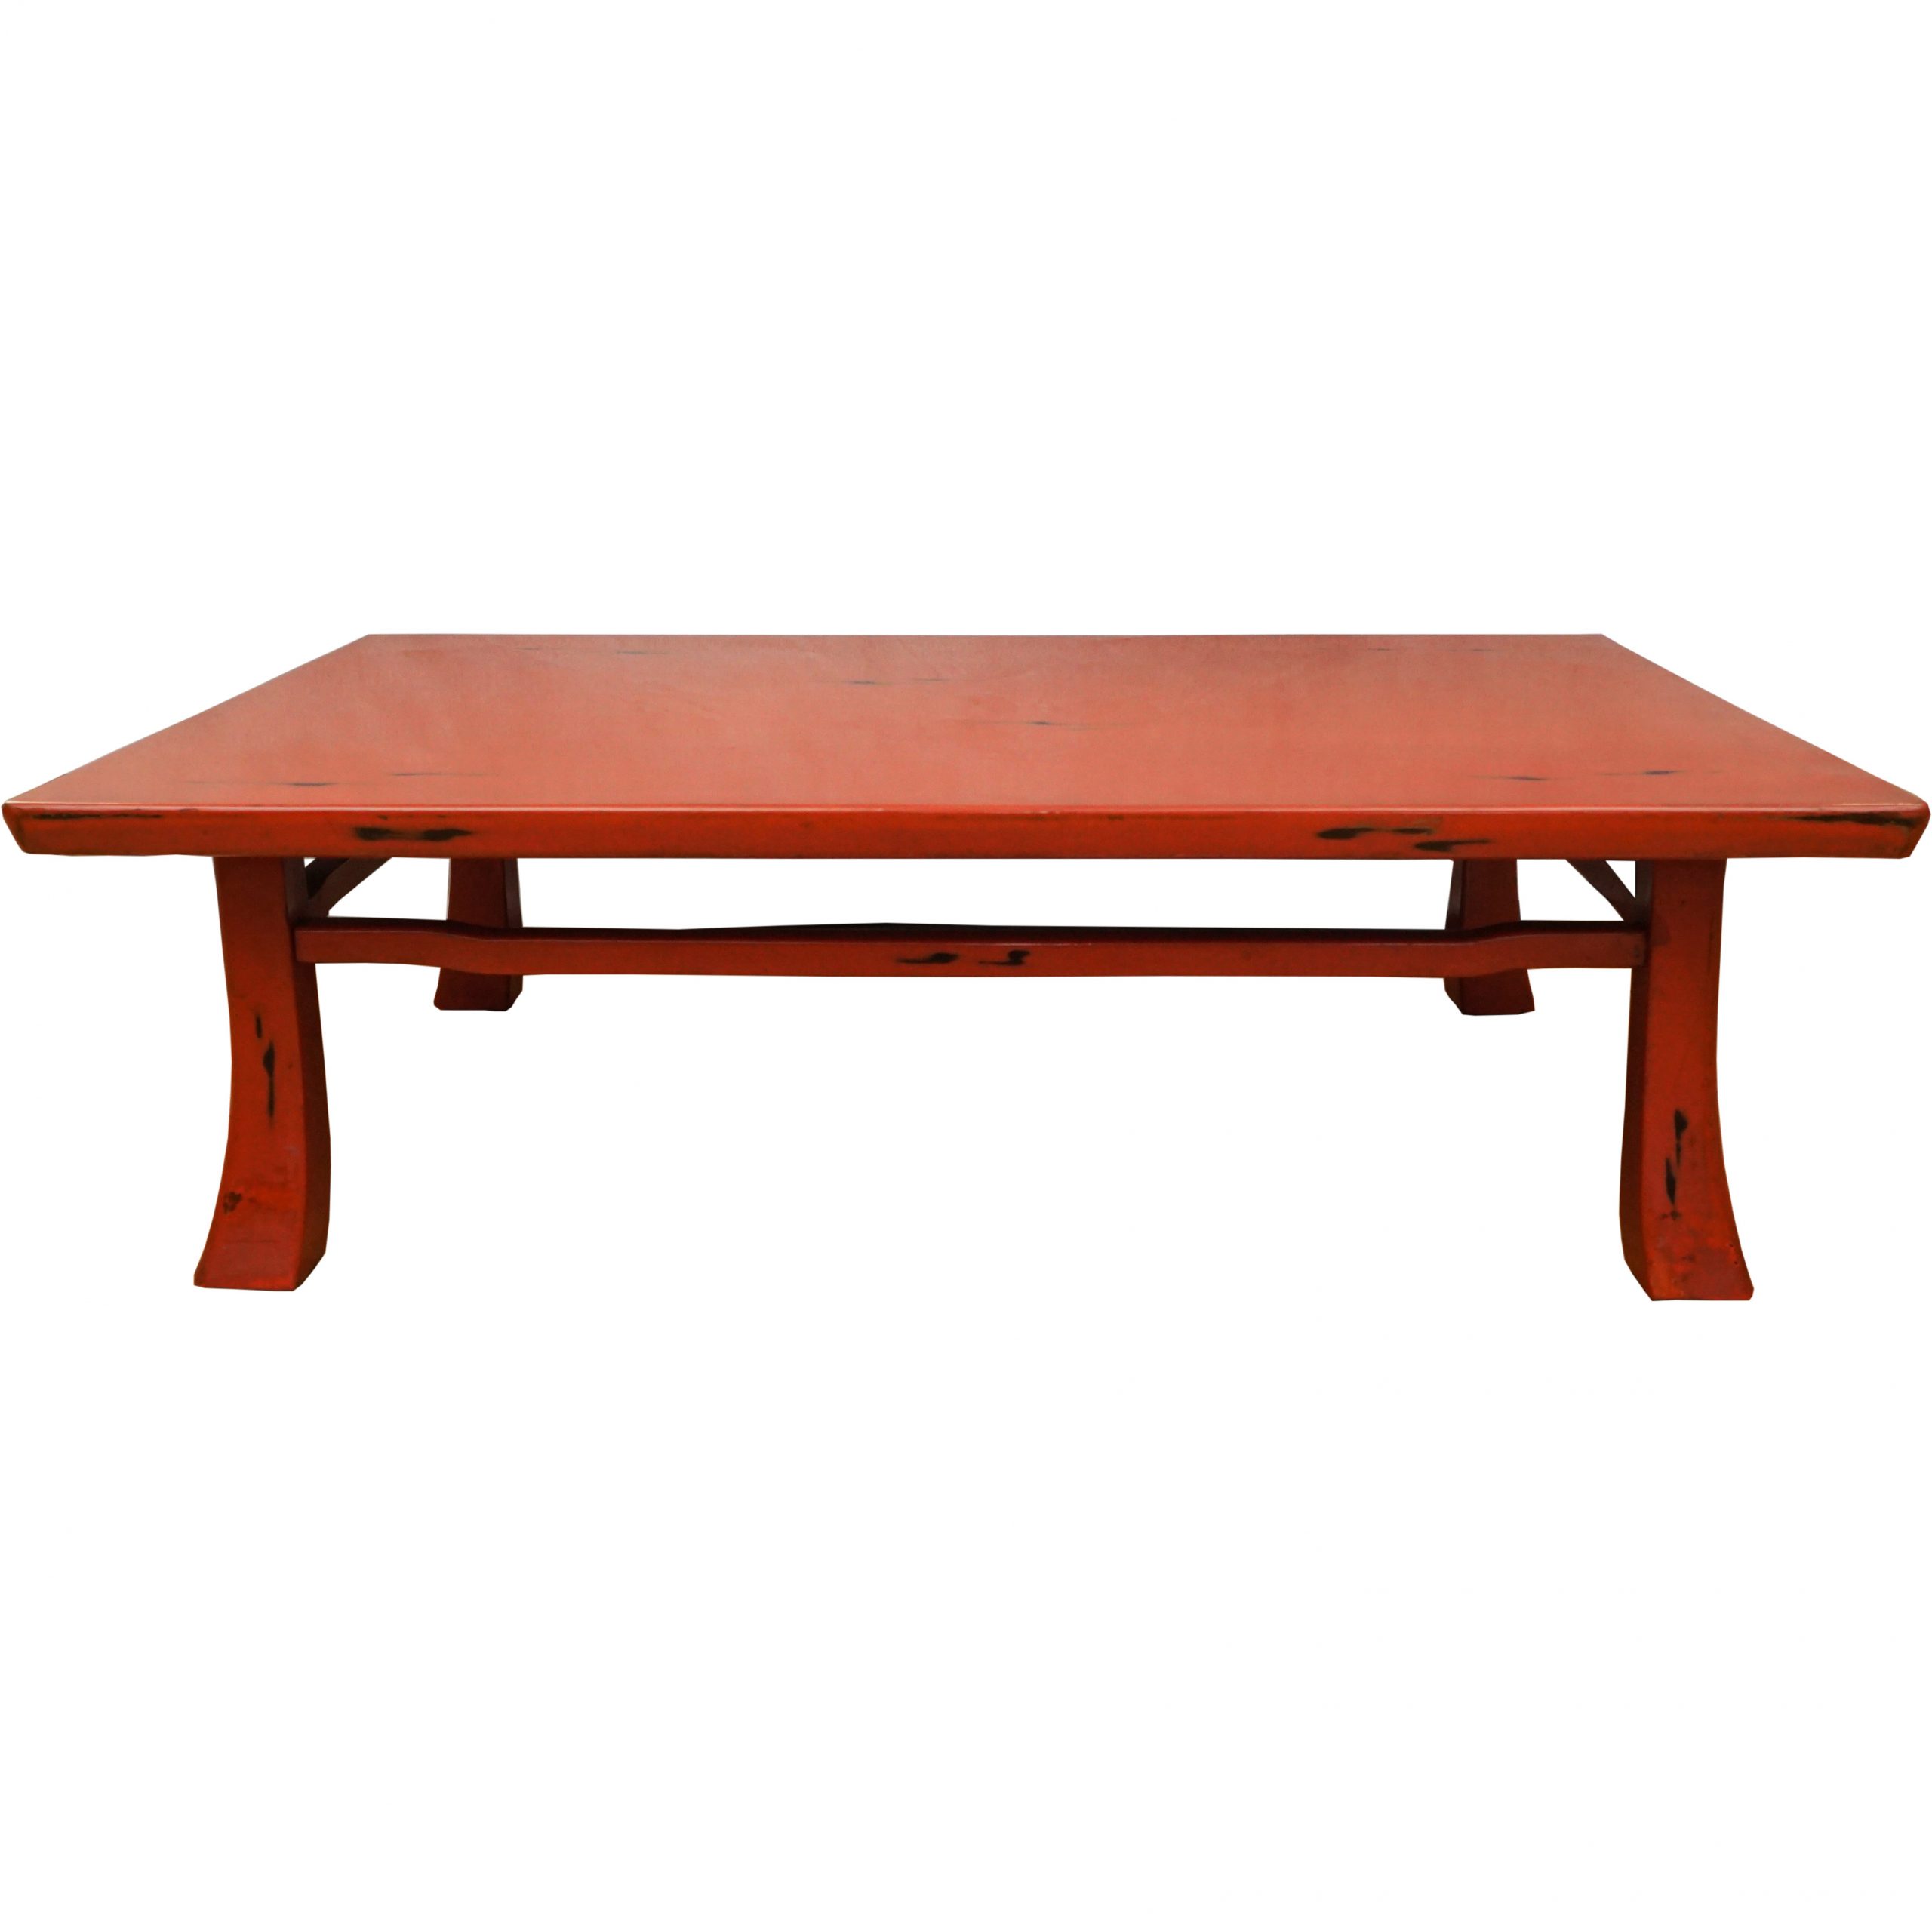 Negoro Lacquer Table